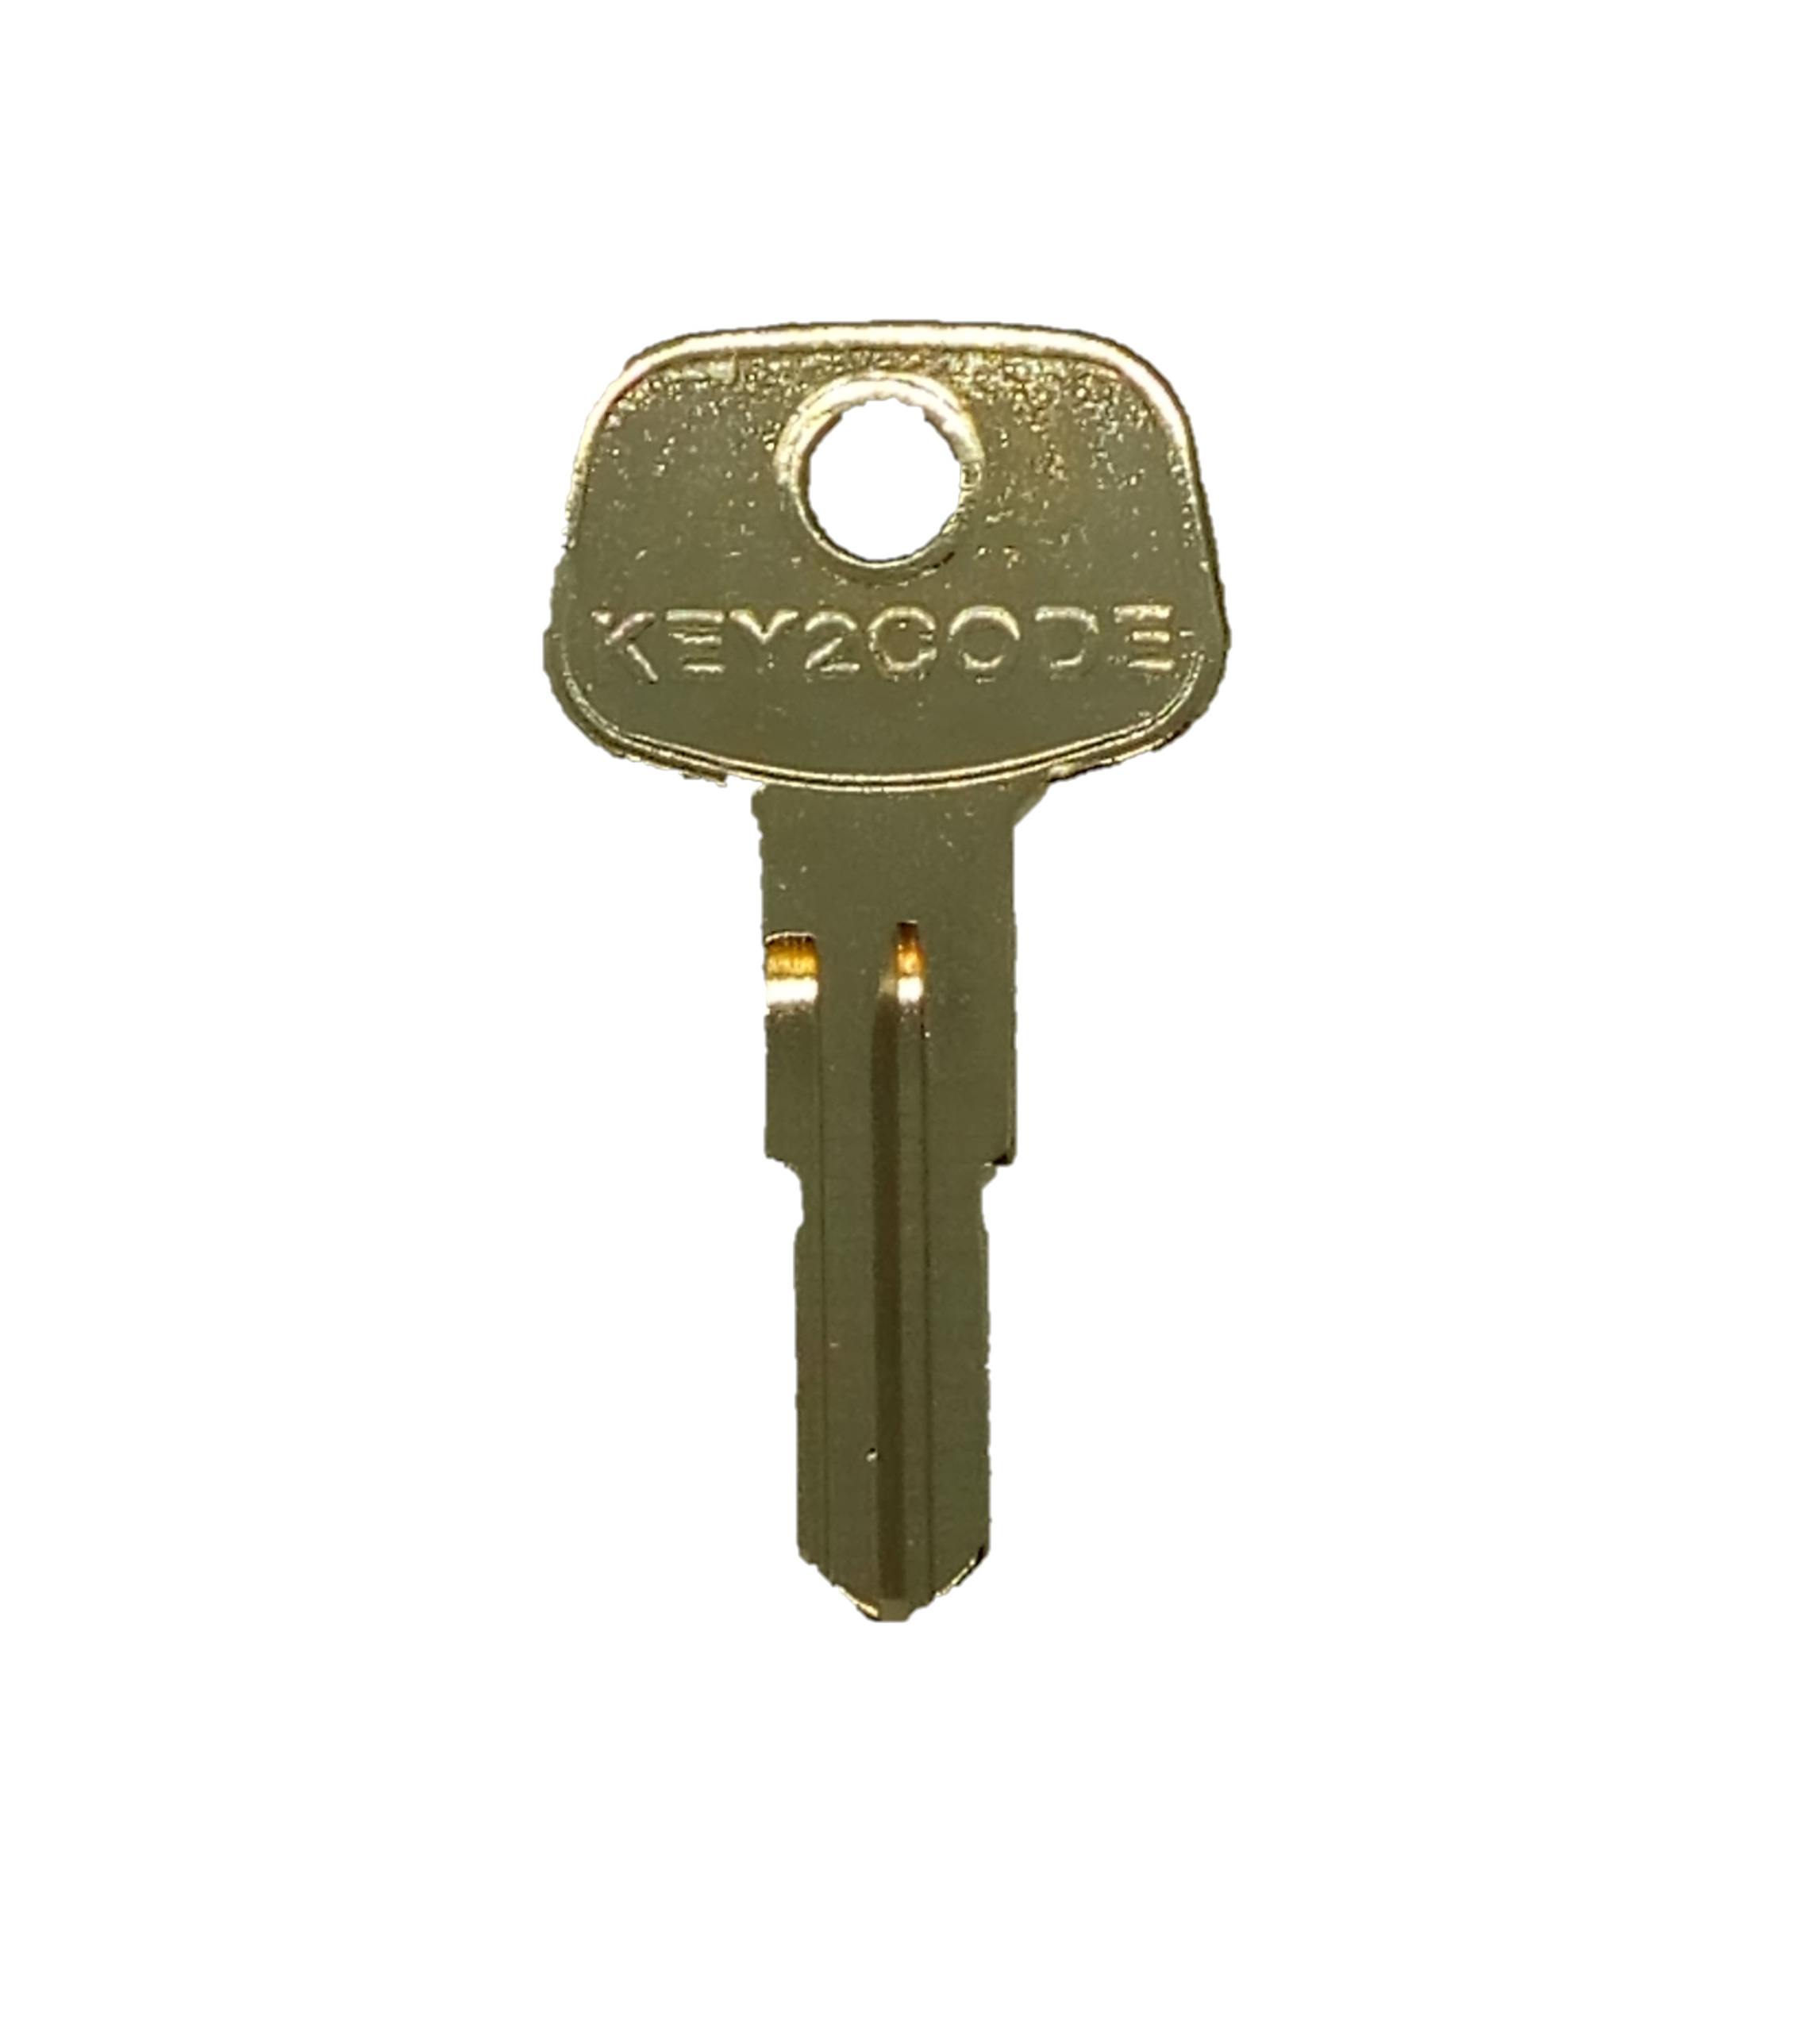 Swift Caravan Keys cut to code West Alloy WD001 to WD200 Bailey Avondale 